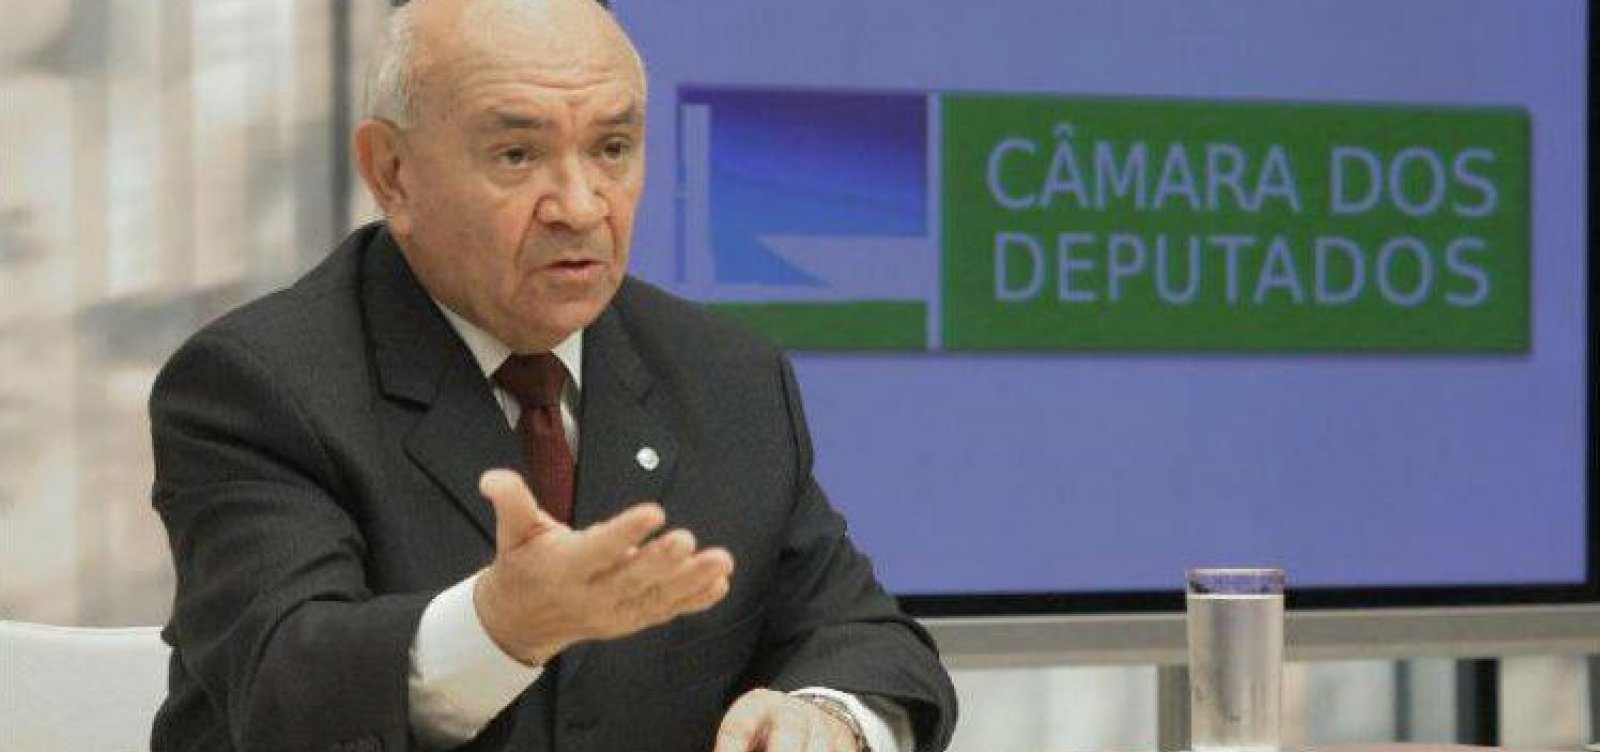 Severino Cavalcanti, ex-presidente da Câmara dos Deputados, morre no Recife aos 89 anos